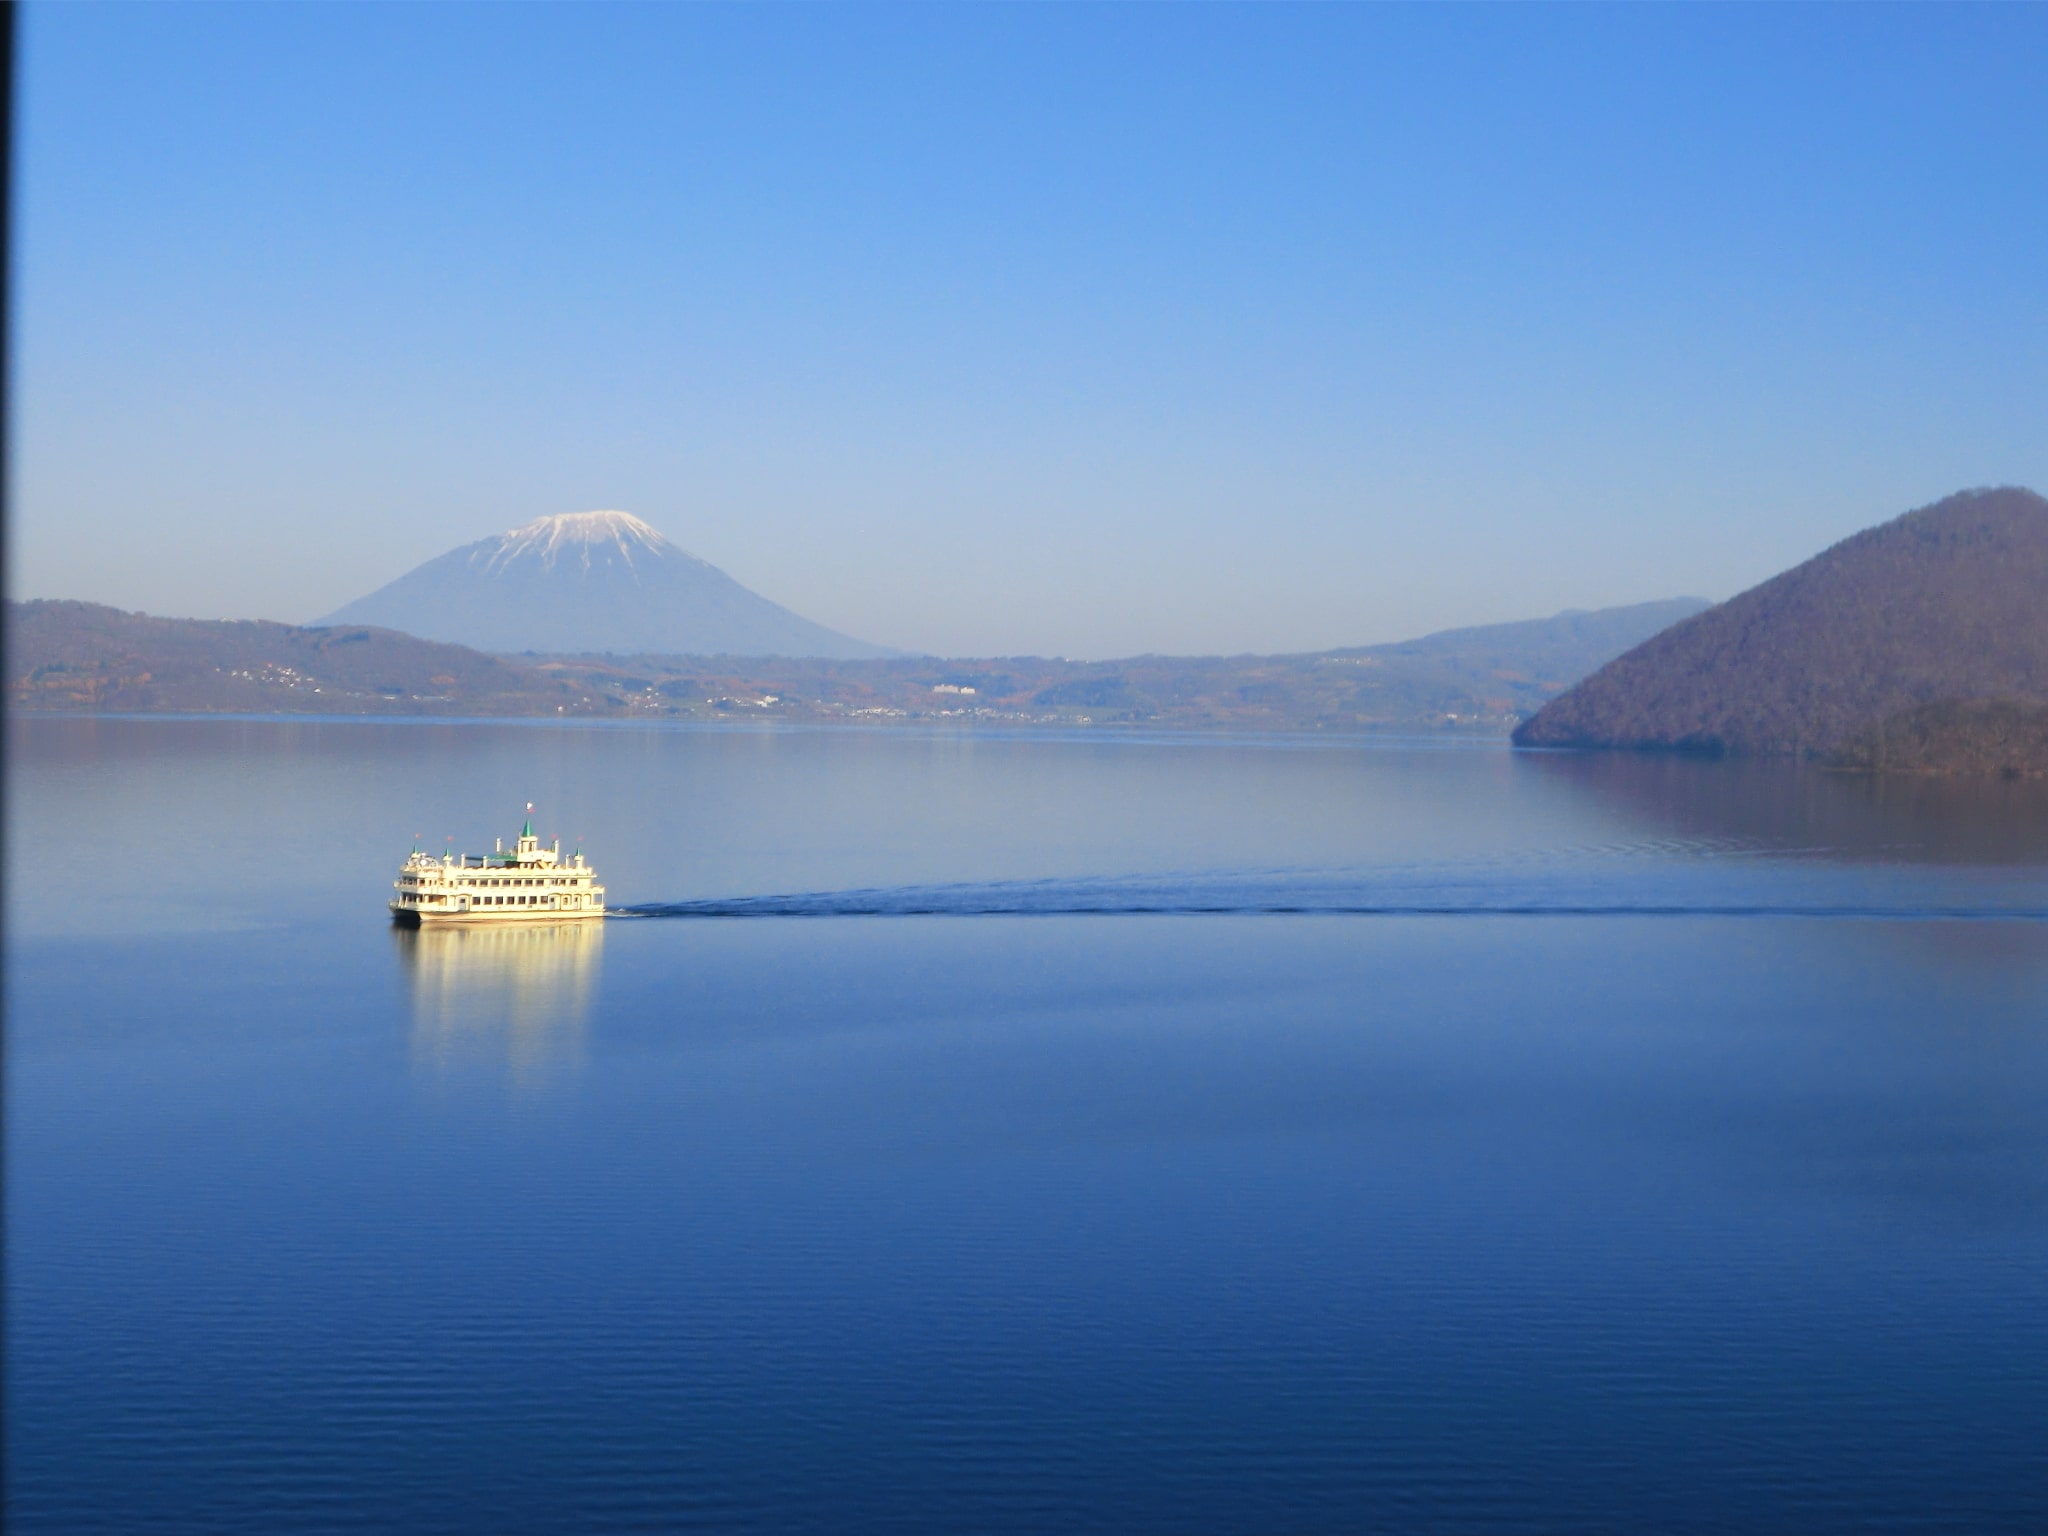 cruise on Lake Toya